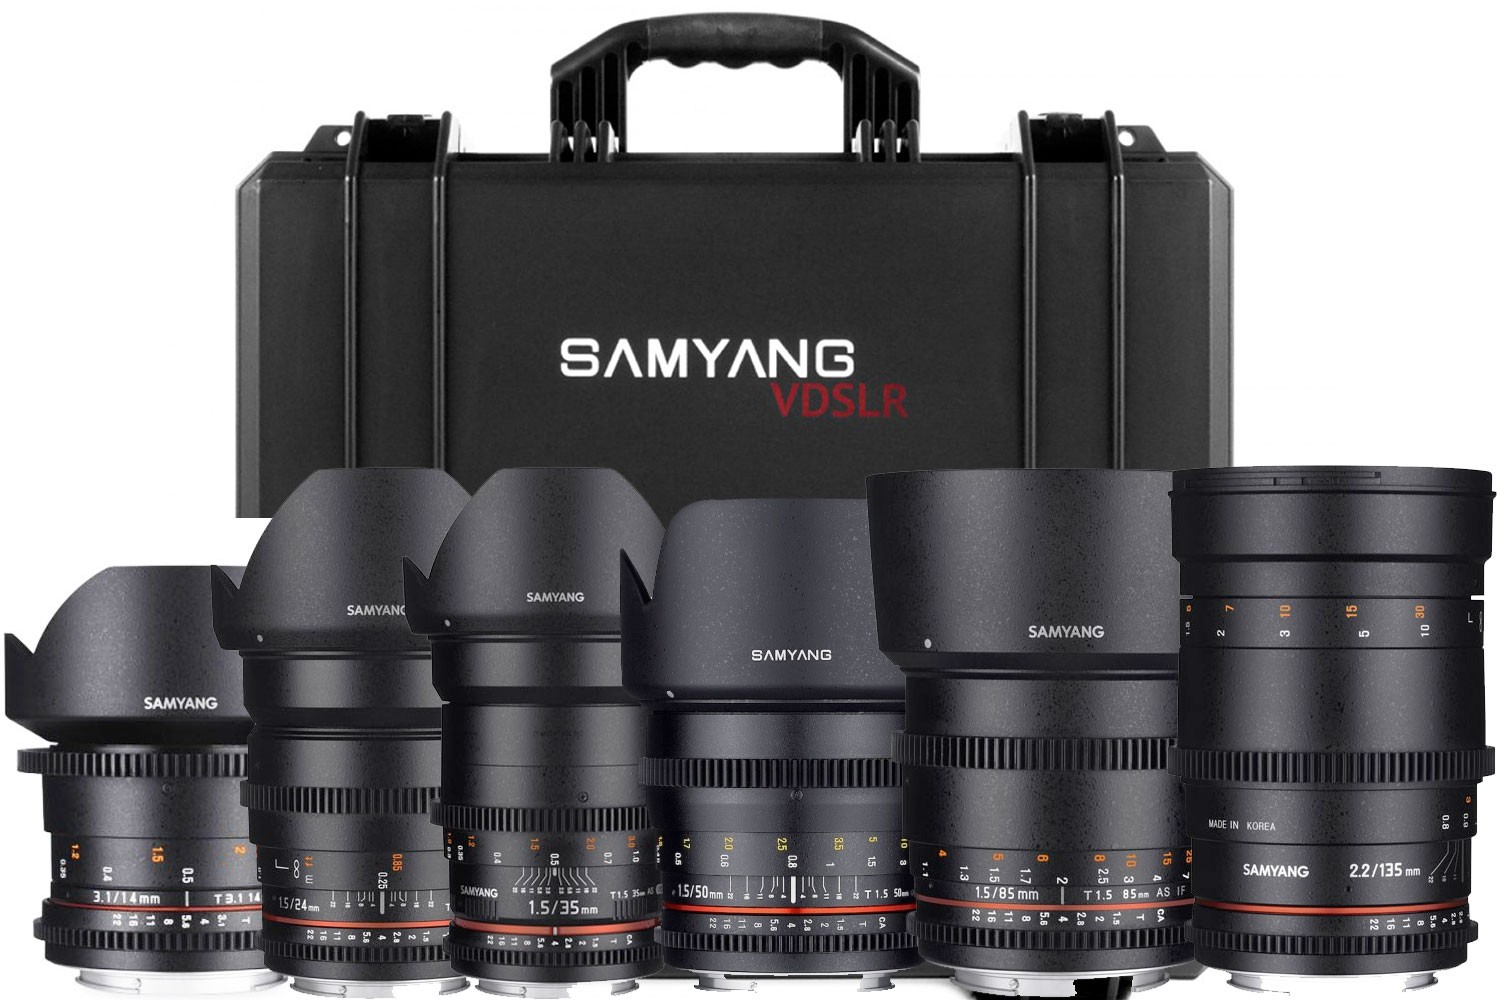 Samyang Lens Kit Price in Pakistan